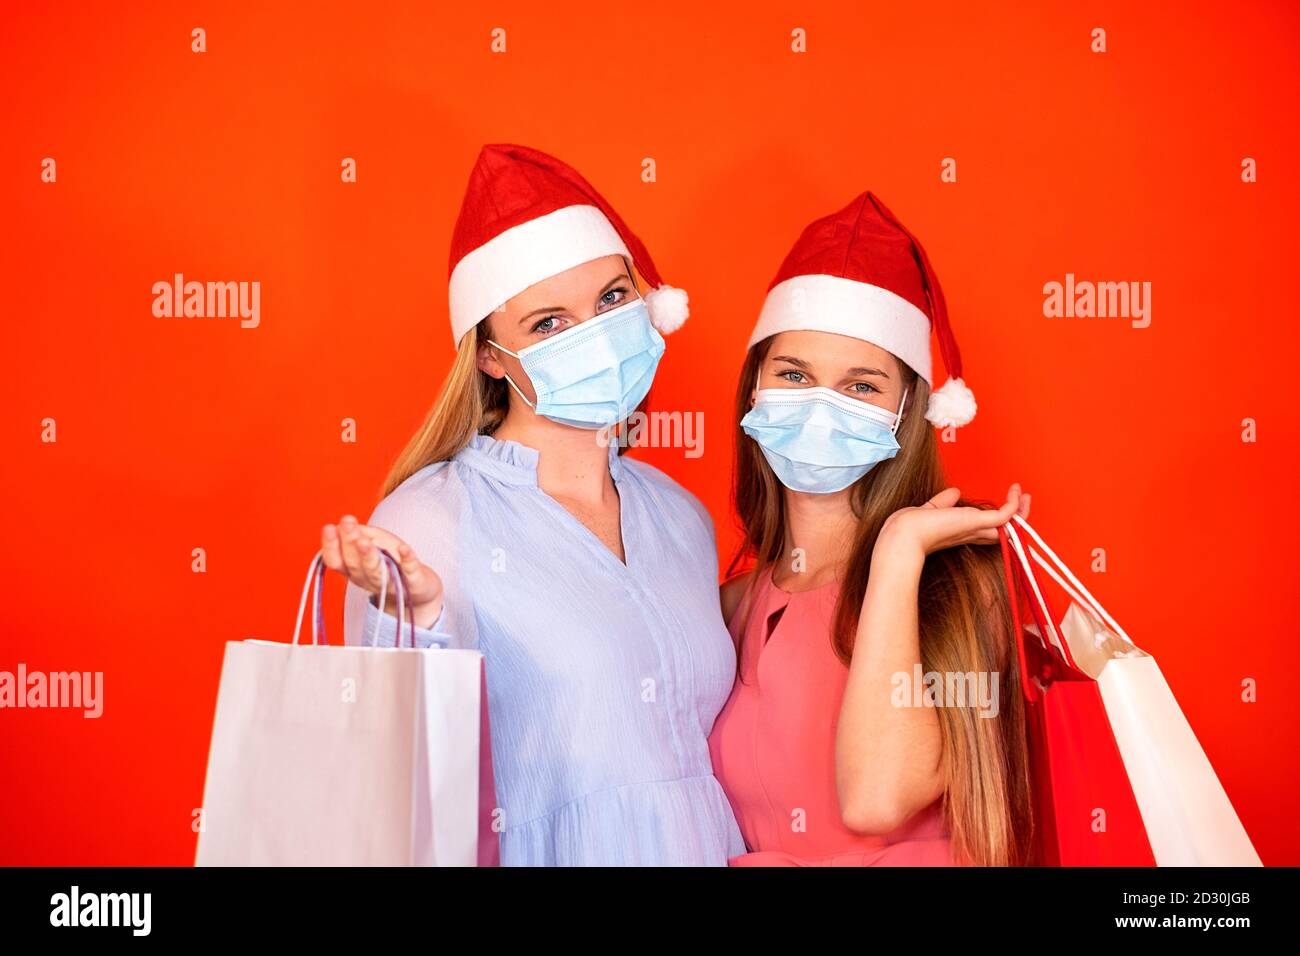 Weibliche Freunde tragen chirurgische Maske und Weihnachtsmütze halten einkaufen Taschen auf einem leuchtend roten orangen Hintergrund Stockfoto